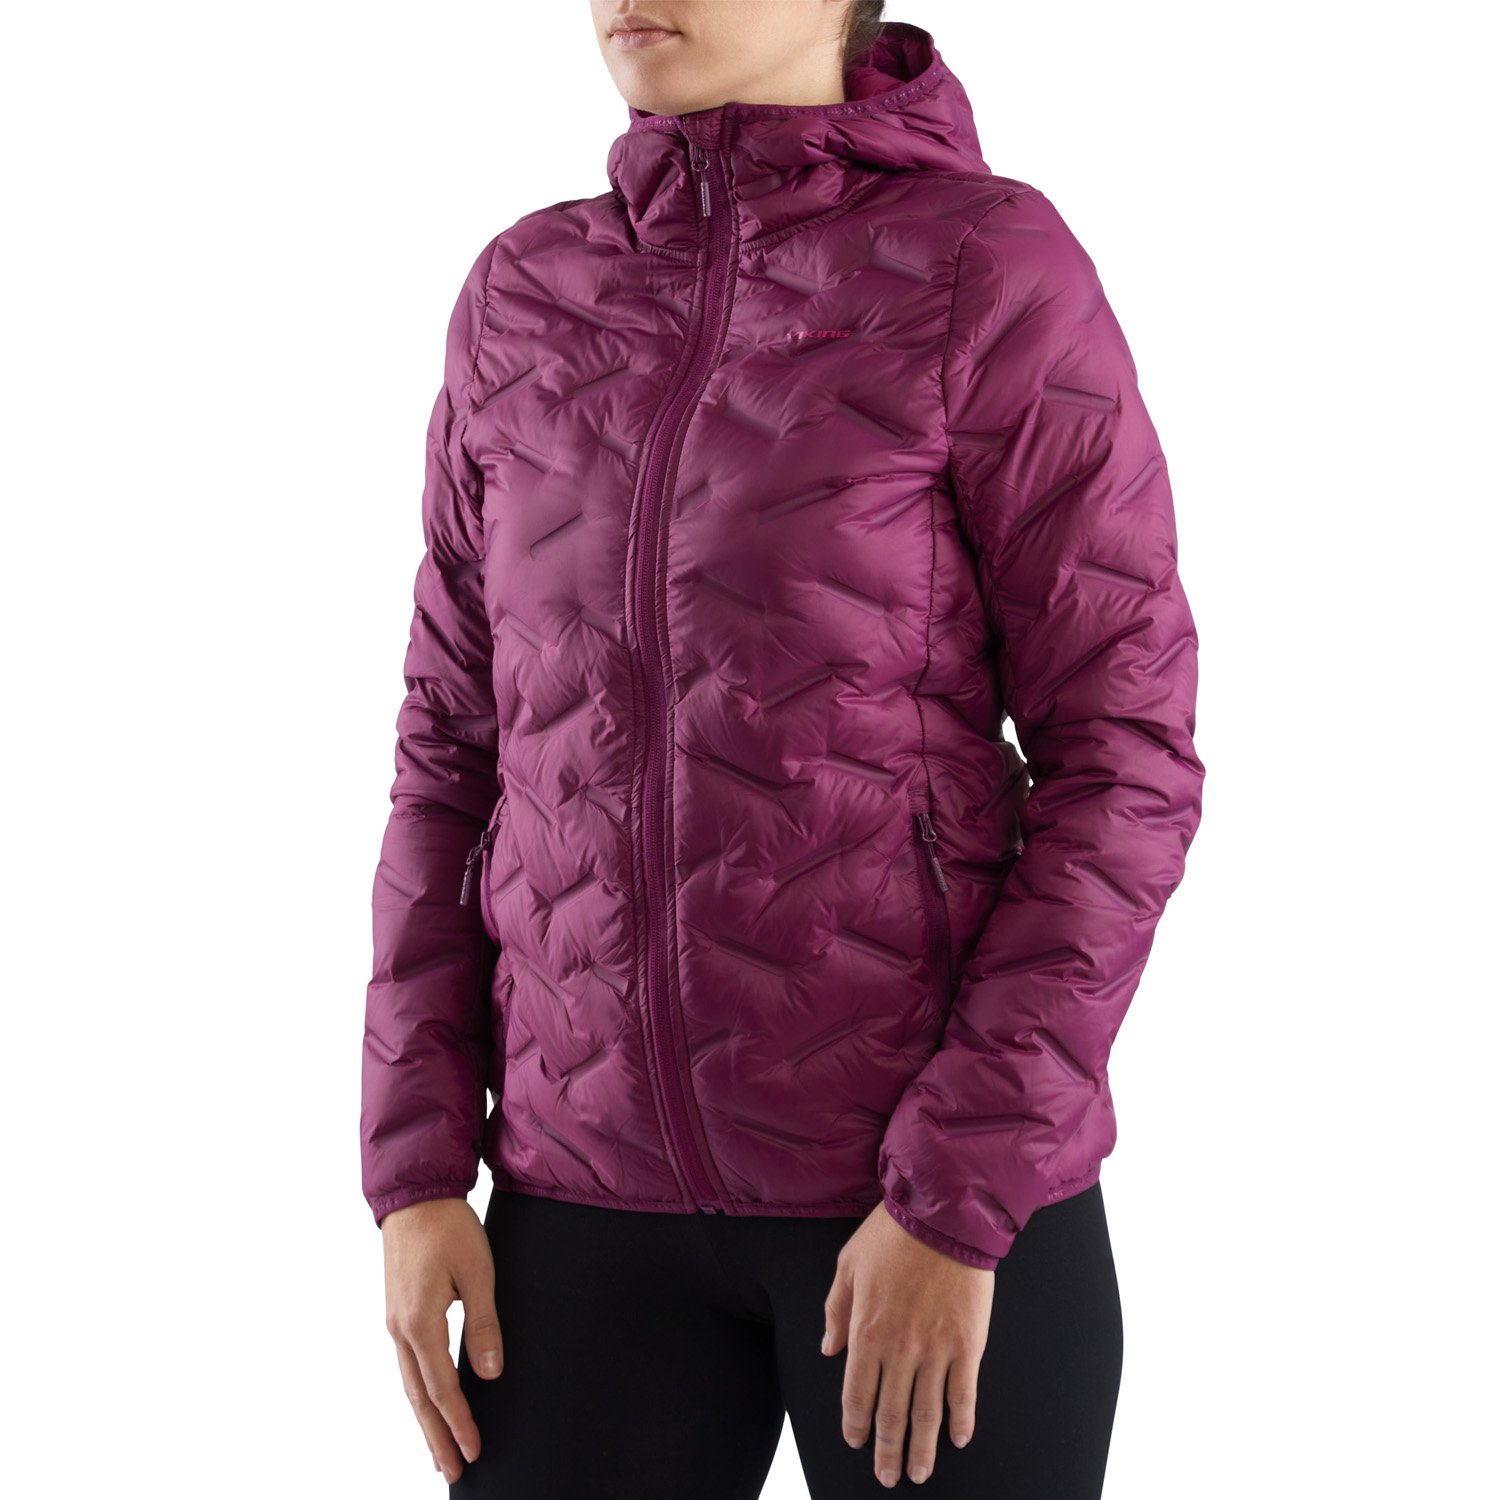 Куртка VIKING Aspen Lady Festival Fuchsia, для активного отдыха, женская, фиолетовая, 750/23/8818_0046 чехол горнолыжный elan ski bag 1p lady